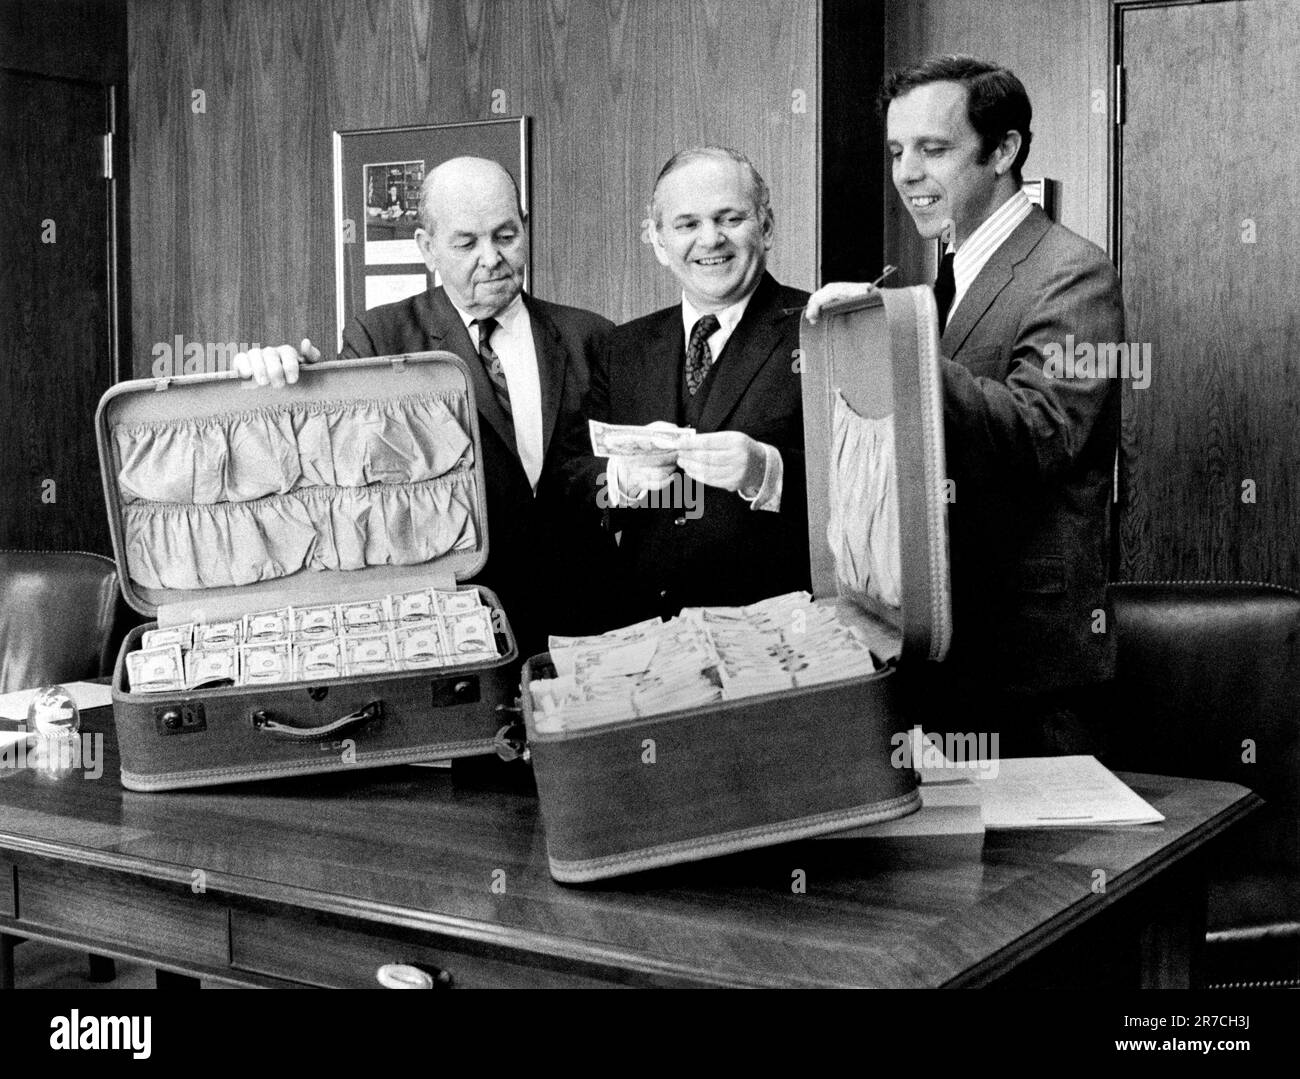 New York, New York: 8 mai 1972. Un agent du service secret, les États-Unis Le procureur, et le procureur de district montrent deux valises d'argent de contrefaçon capturé. Banque D'Images